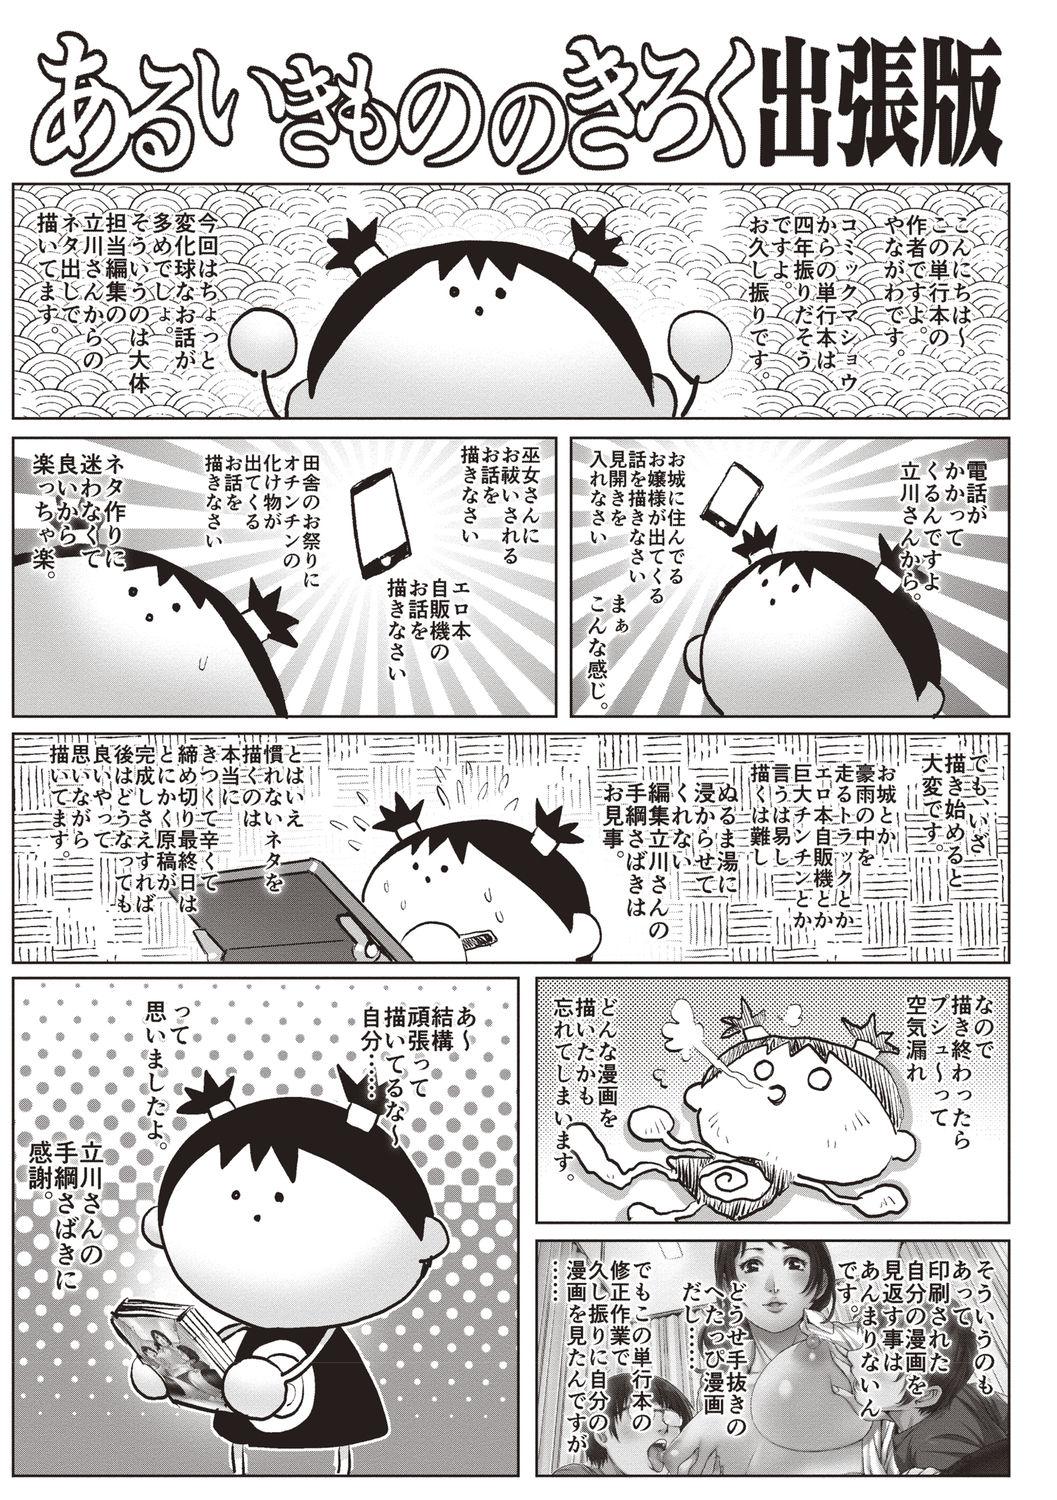 Boquete Toshishita Doutei Mania Blacksonboys - Page 201